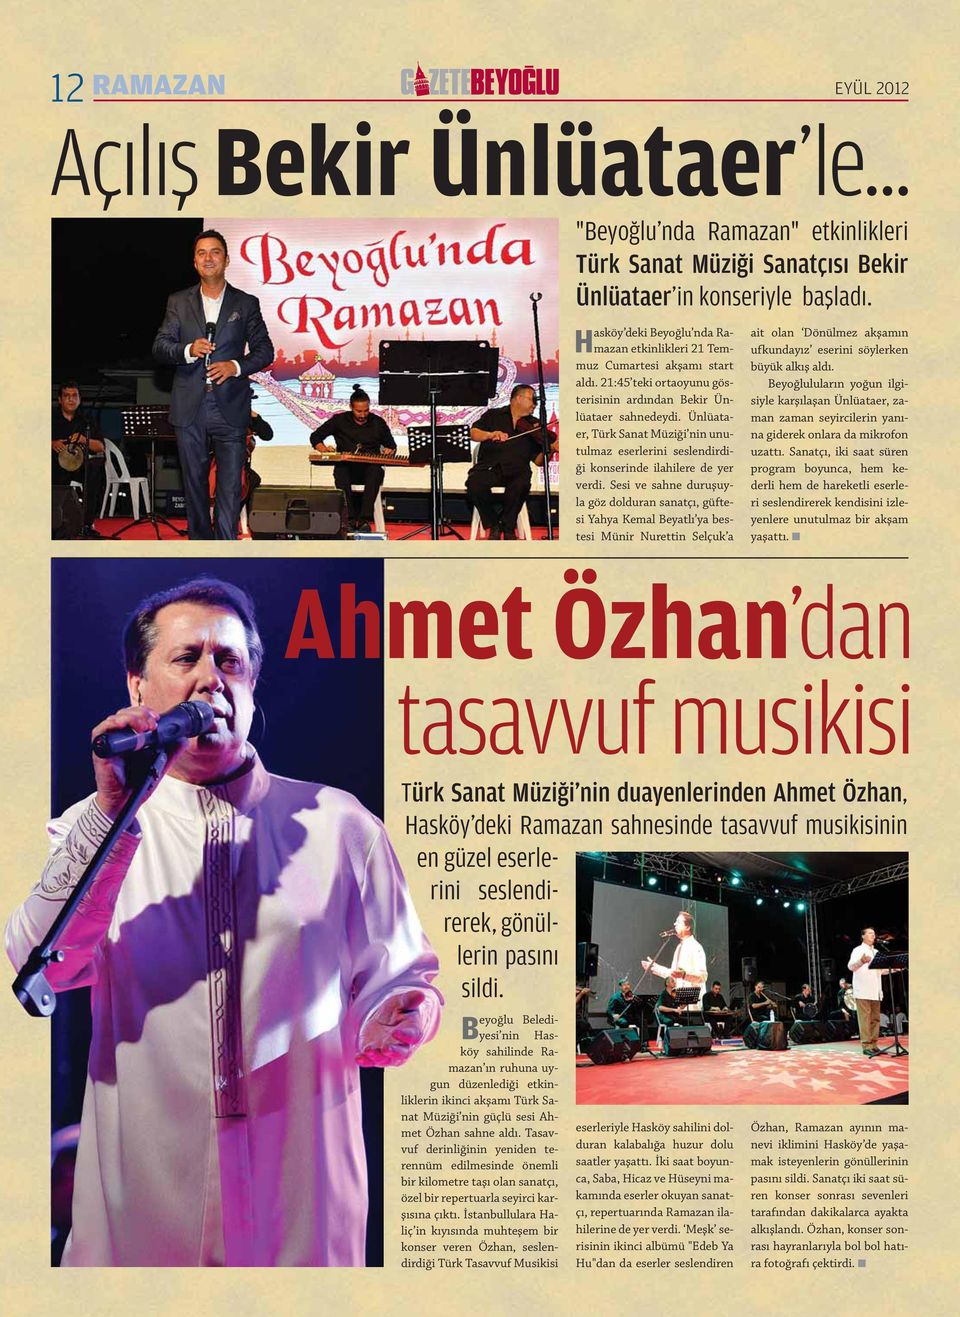 Ünlüataer, Türk Sanat Müziği nin unutulmaz eserlerini seslendirdiği konserinde ilahilere de yer verdi.